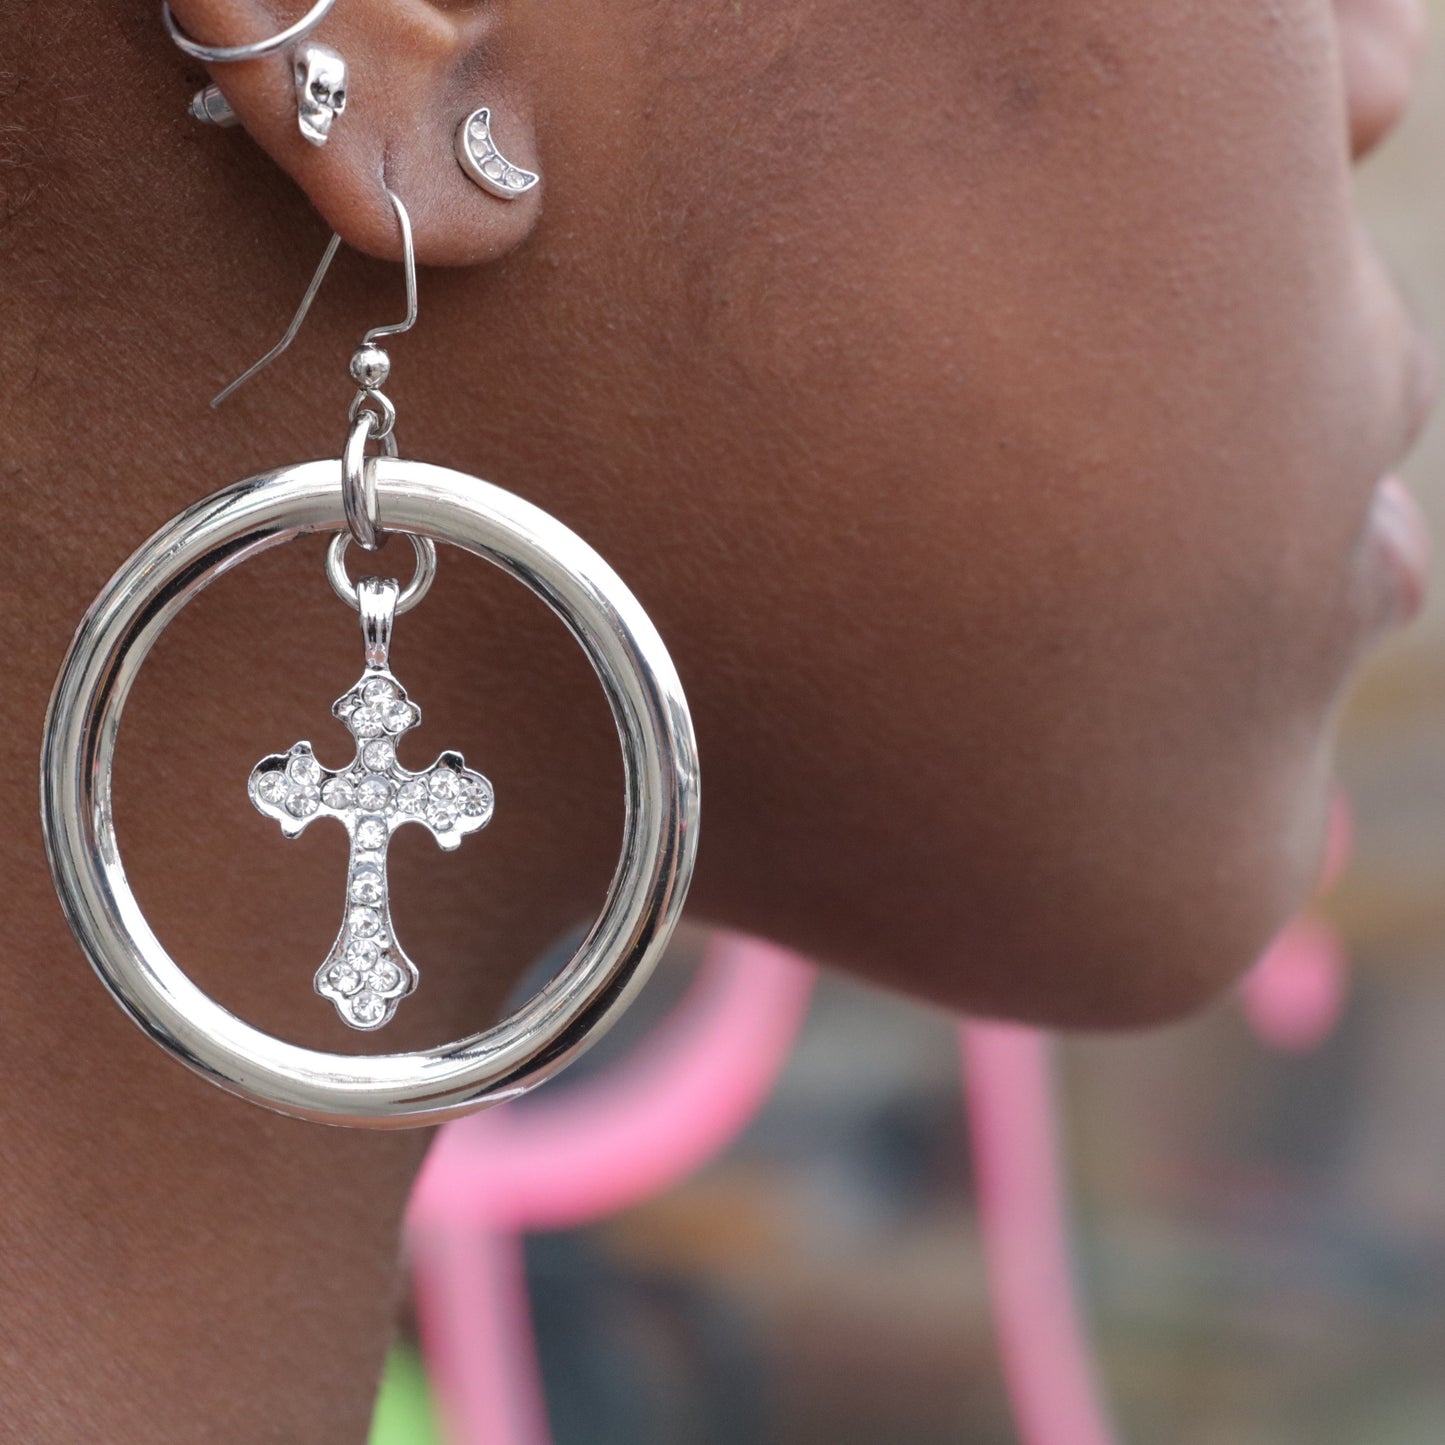 Faith Earrings